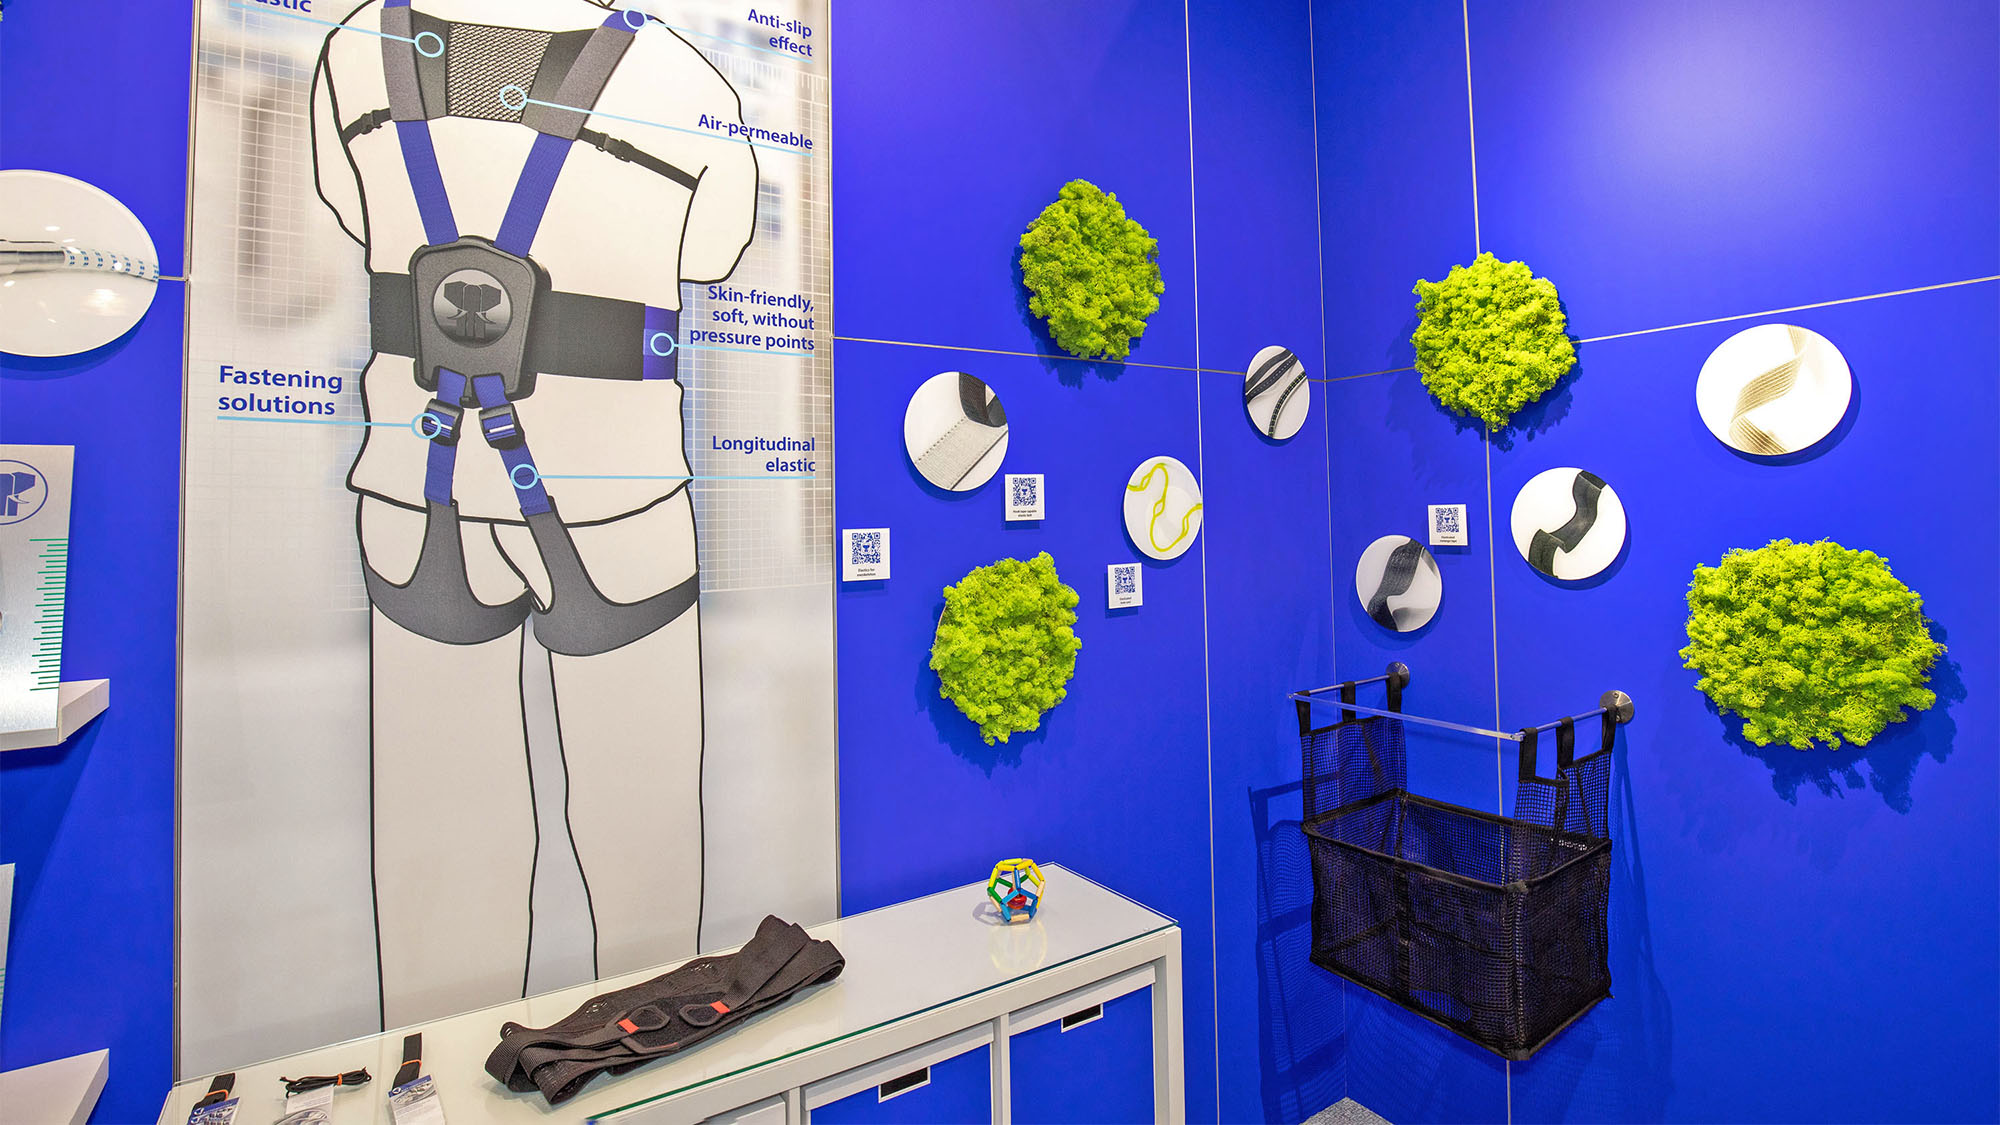 JUMBO-Textil-Innovationen auf der techtextil 2022: Messestand von JUMBO-Textil im Detail: blaue Messewand, darauf Produktbilder verschiedener Schmaltextilien, im Vordergrund sind Produktbeispiele ausgestellt. Links befindet sich eine Grafik eines Exoskeletts